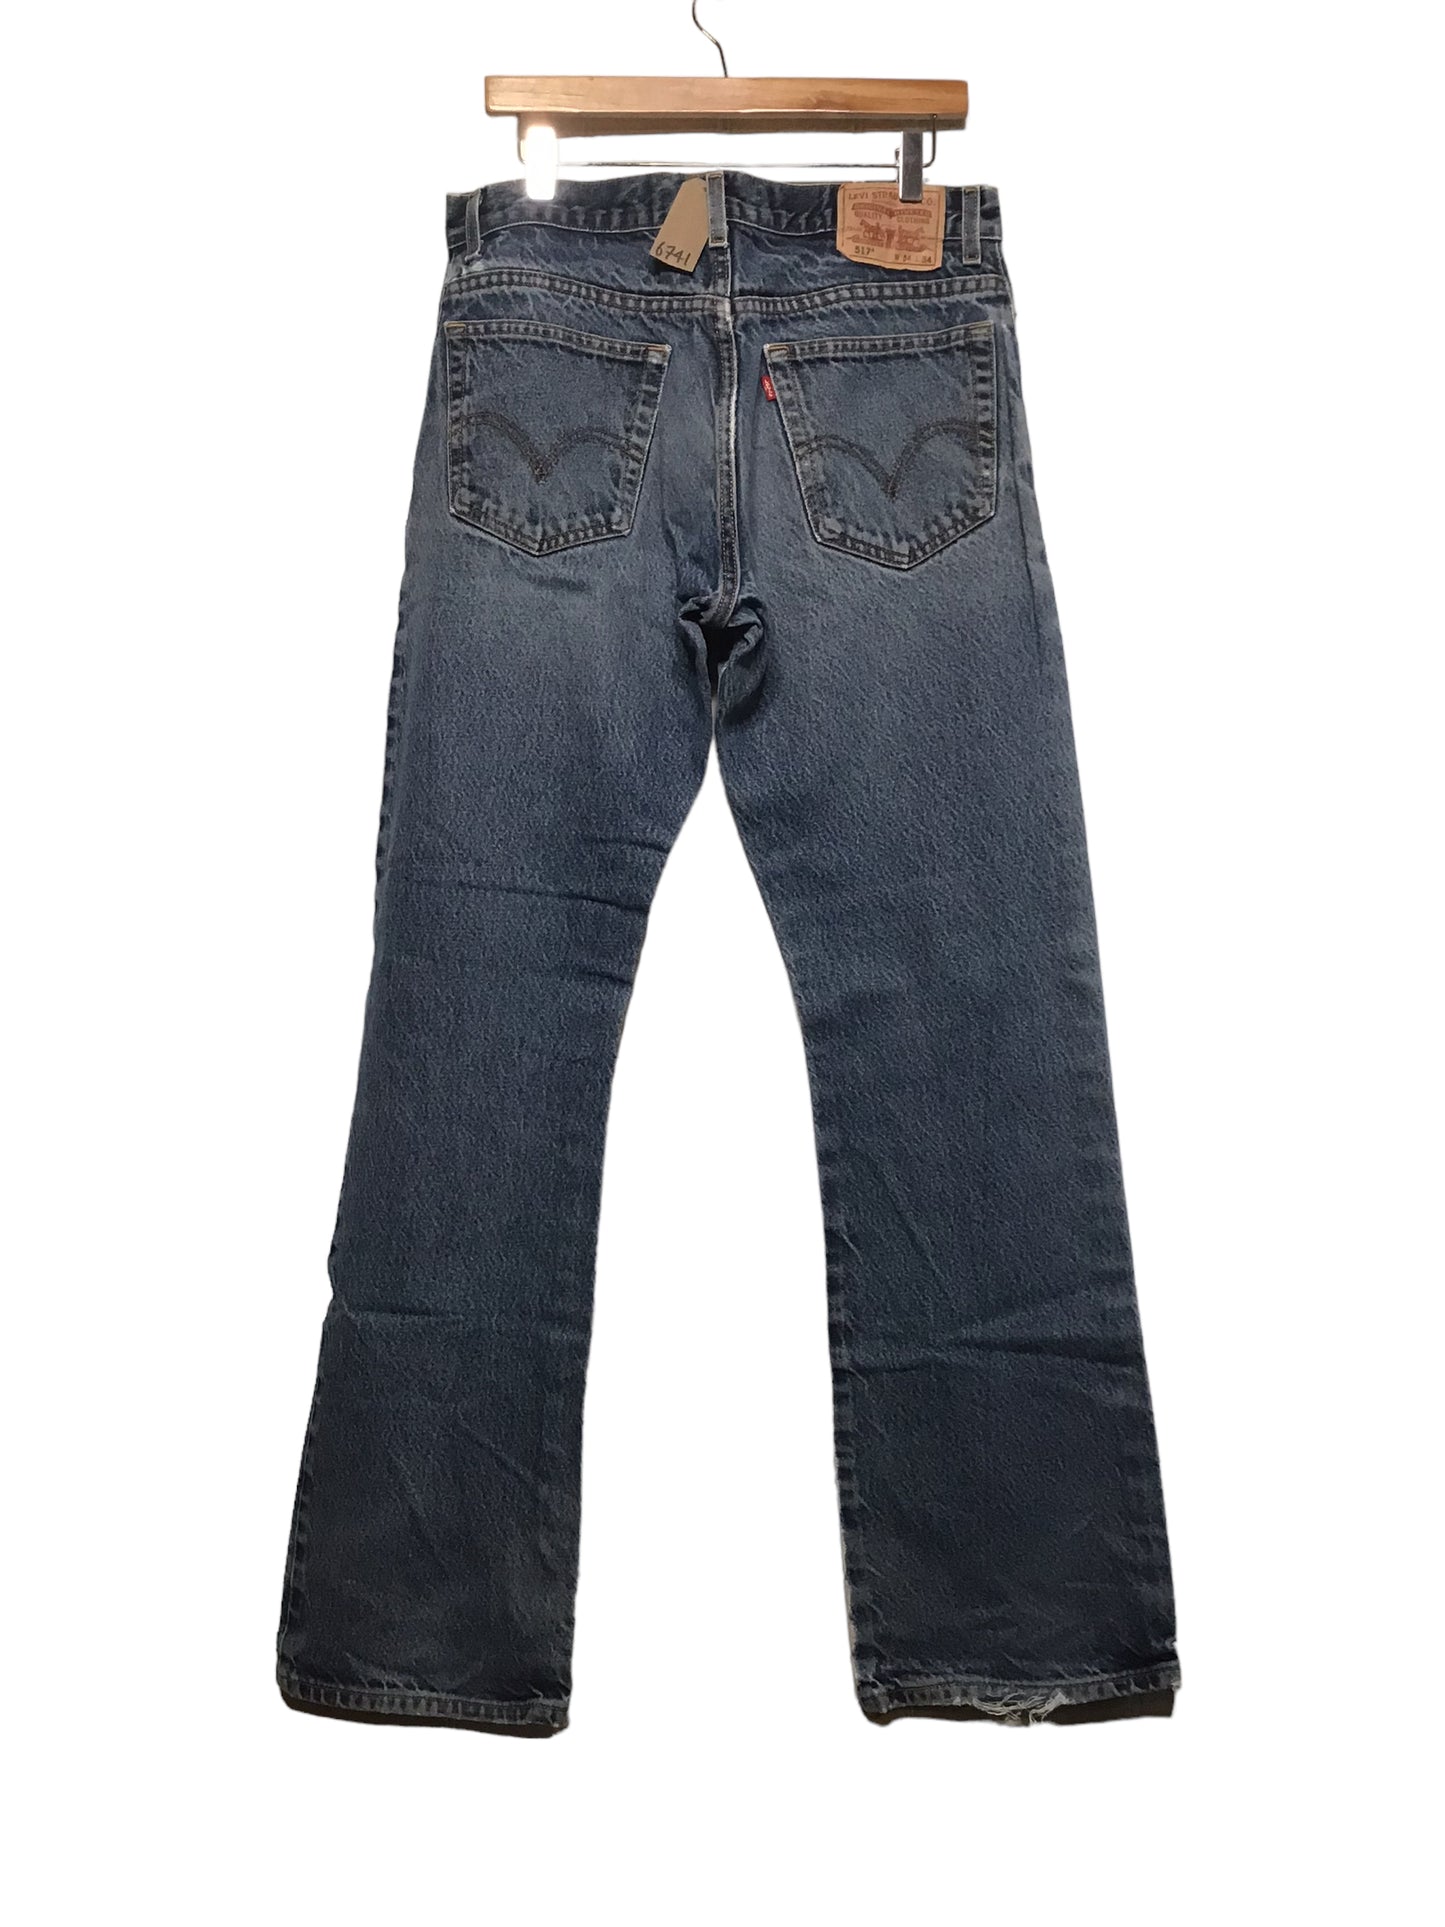 Levi 517 Jeans (34x34)